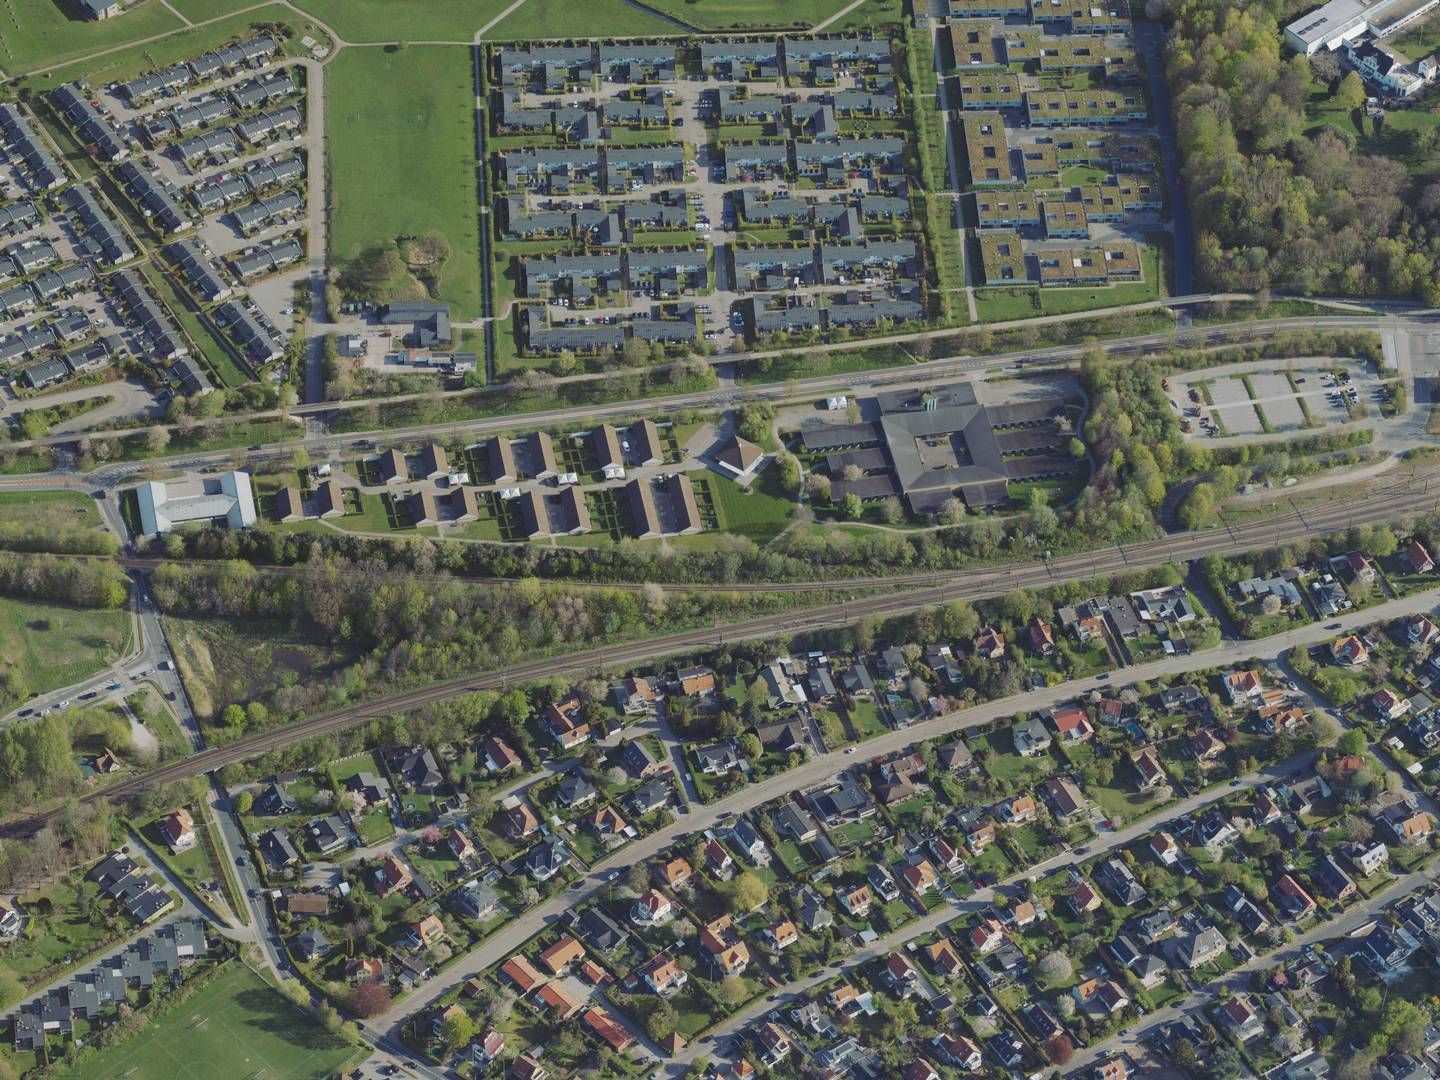 Boligområdet Stævnen i nordsjællandske Snekkersten ses midt i billedet øverst. | Foto: Styrelsen for Dataforsyning og Infrastruktur